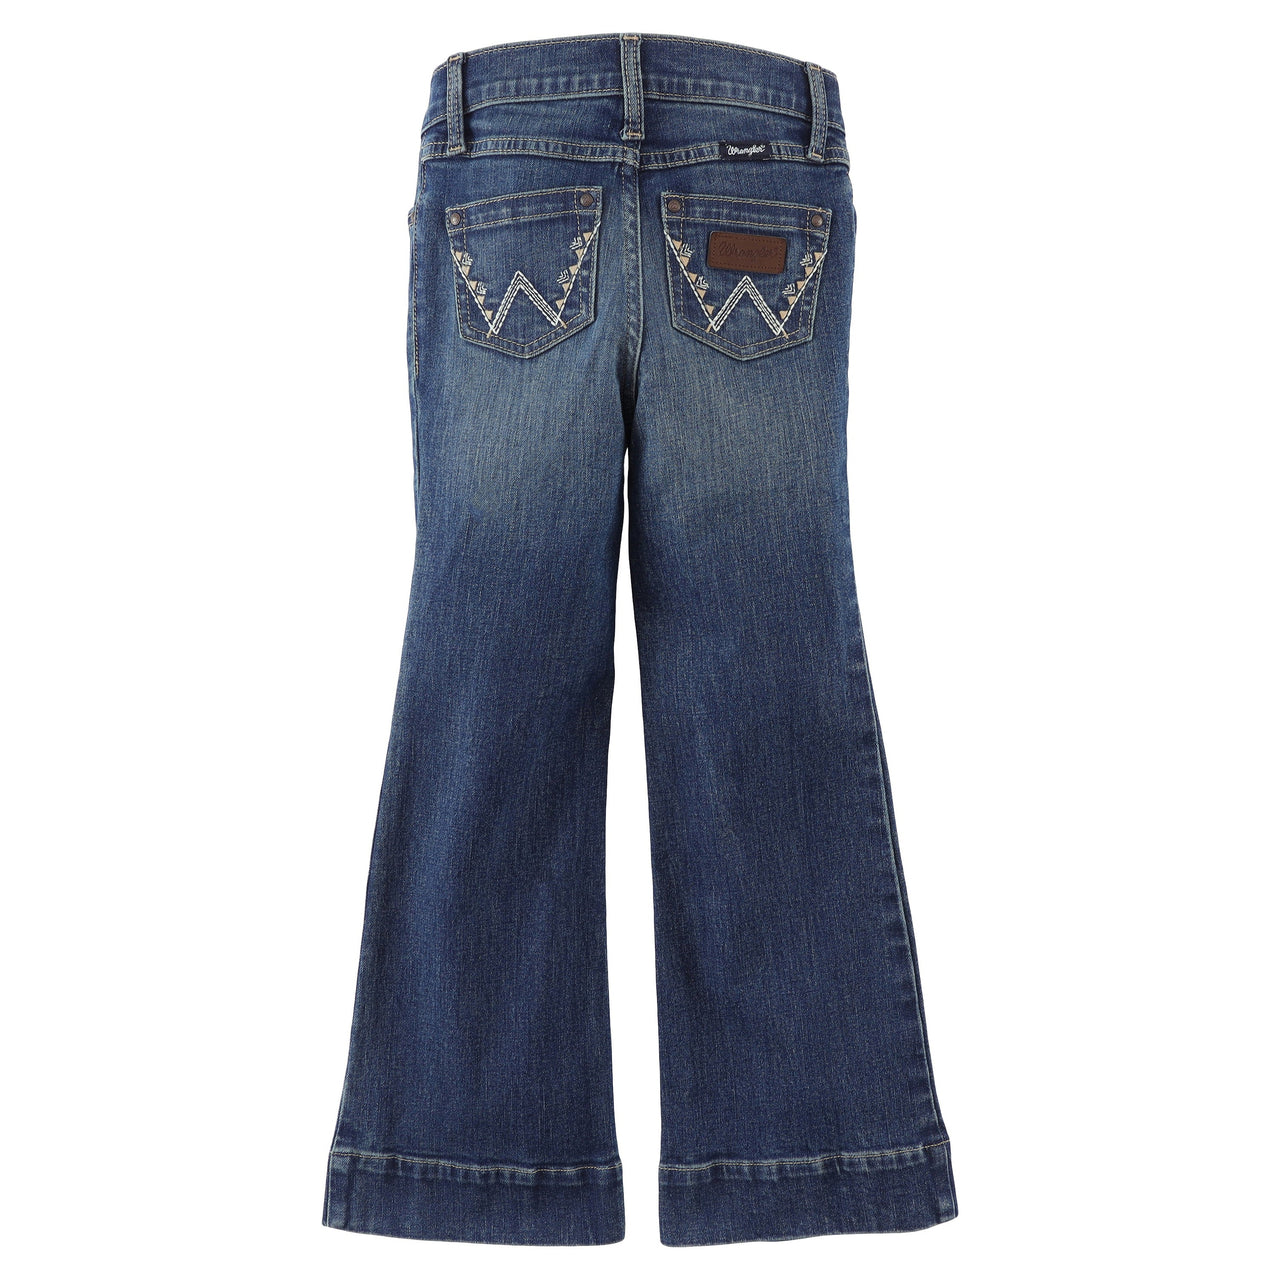 Wrangler Girl's Retro Trouser Jeans - Lindsey